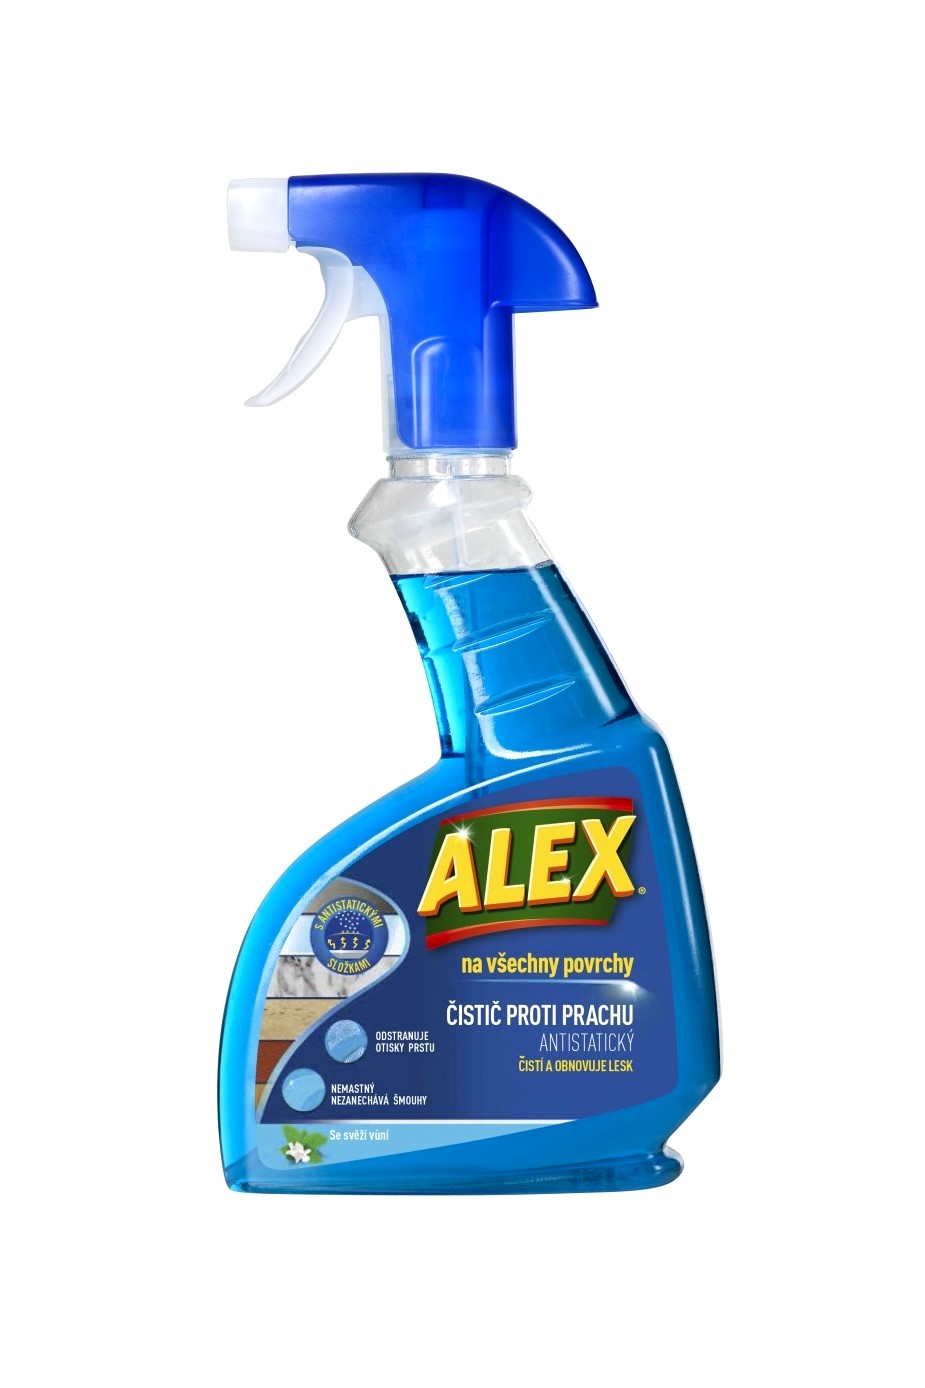 Alex čistič proti prachu 375 ml Antistatický